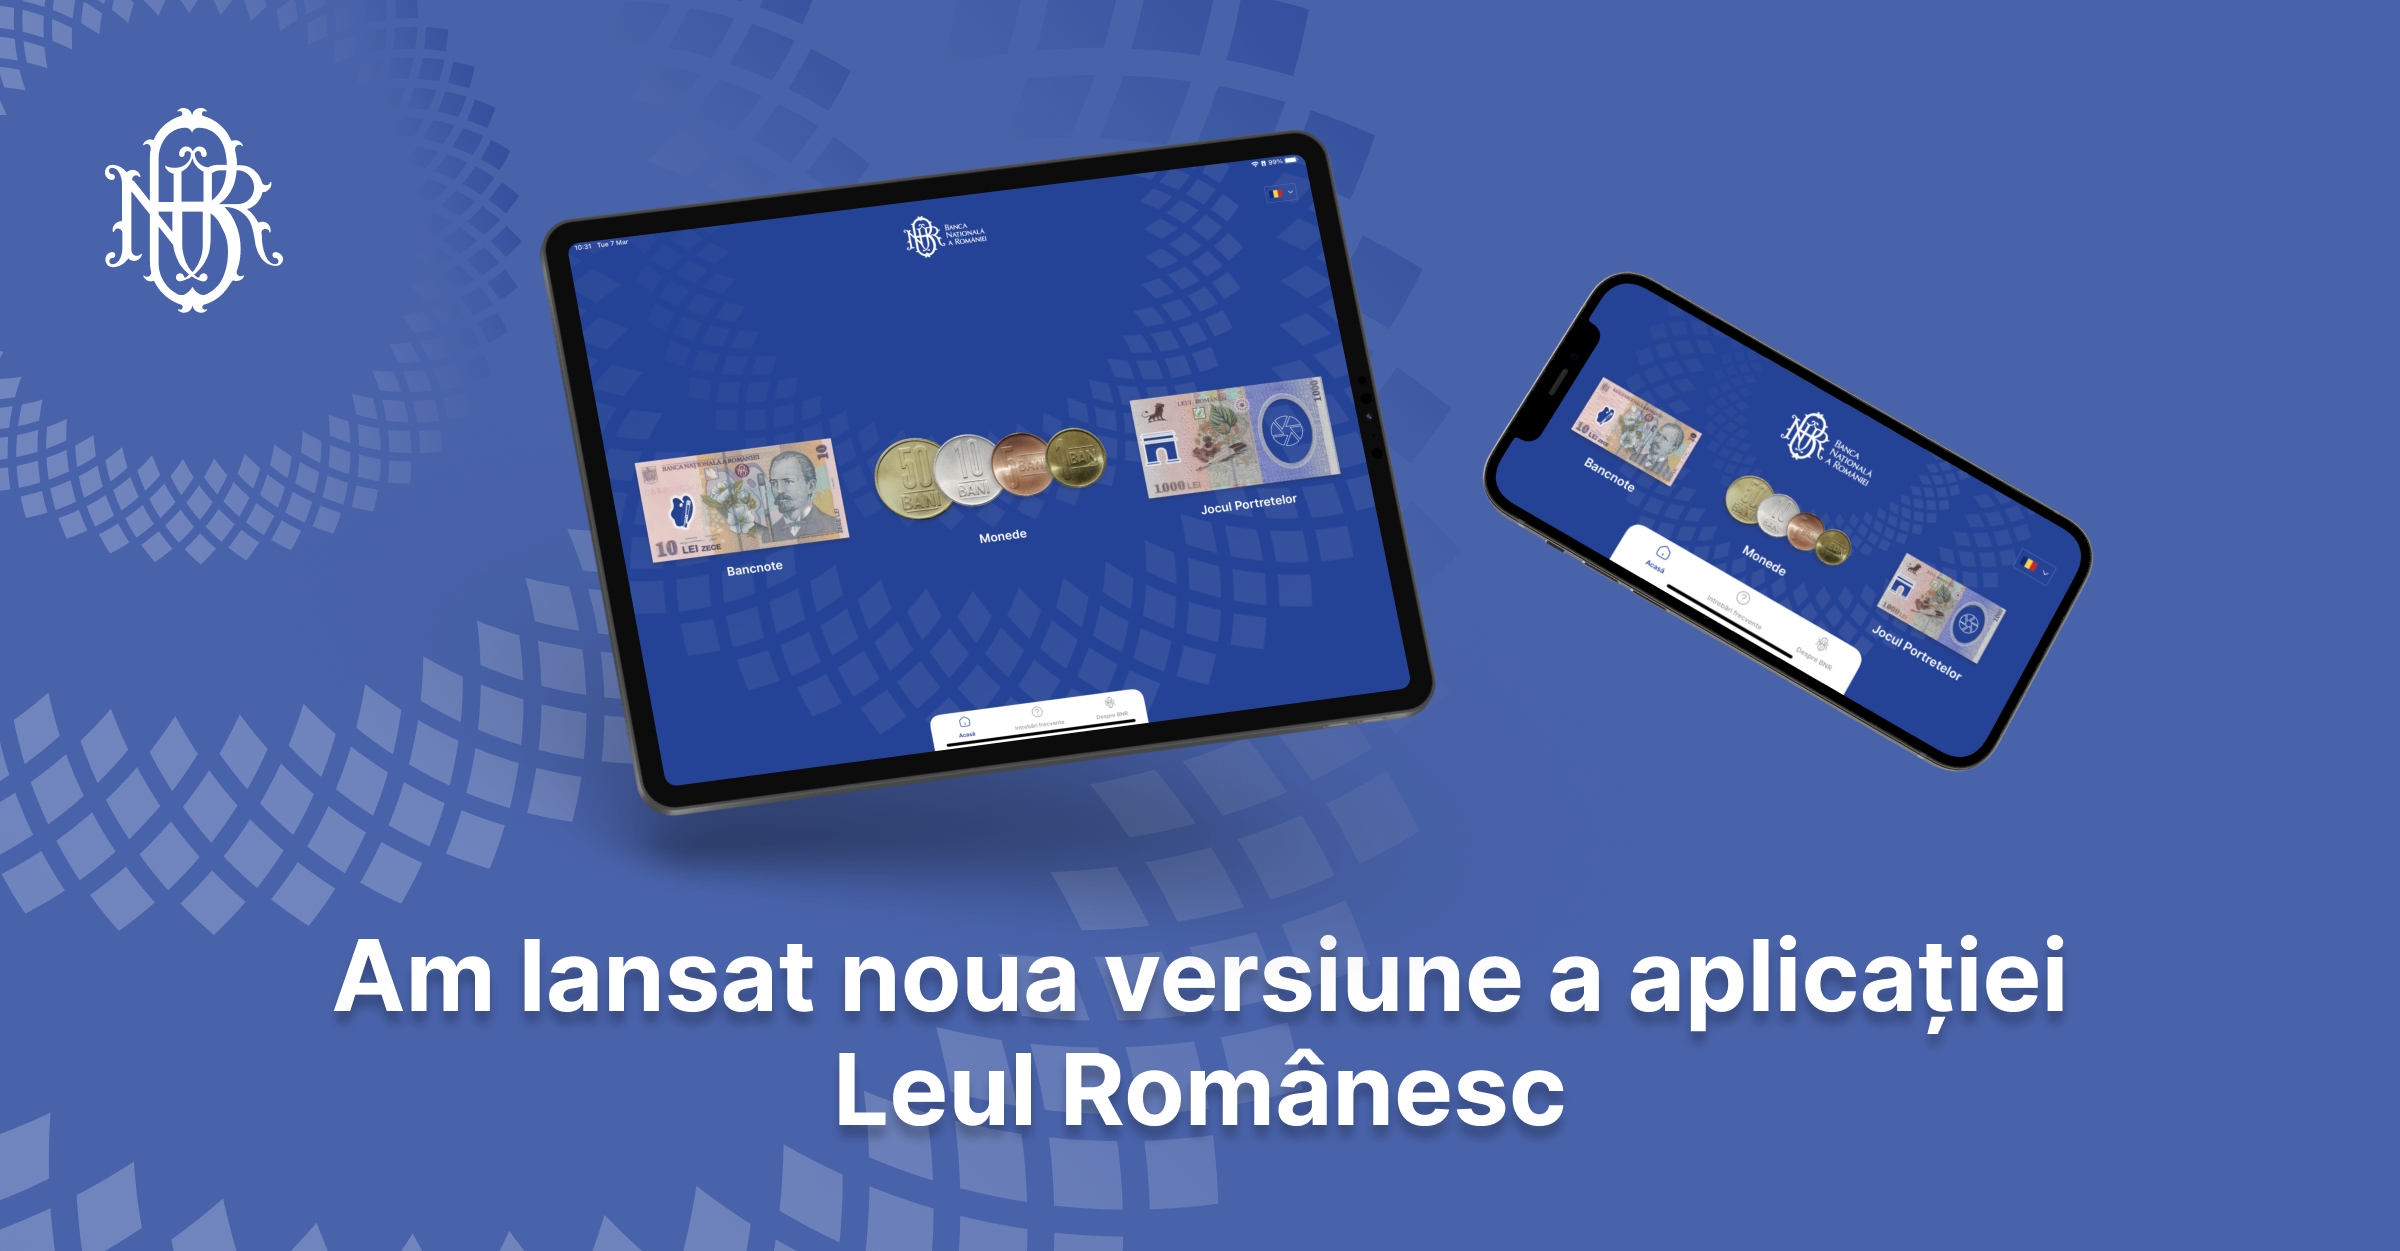 Leul Romanesc  - aplicație de mobil